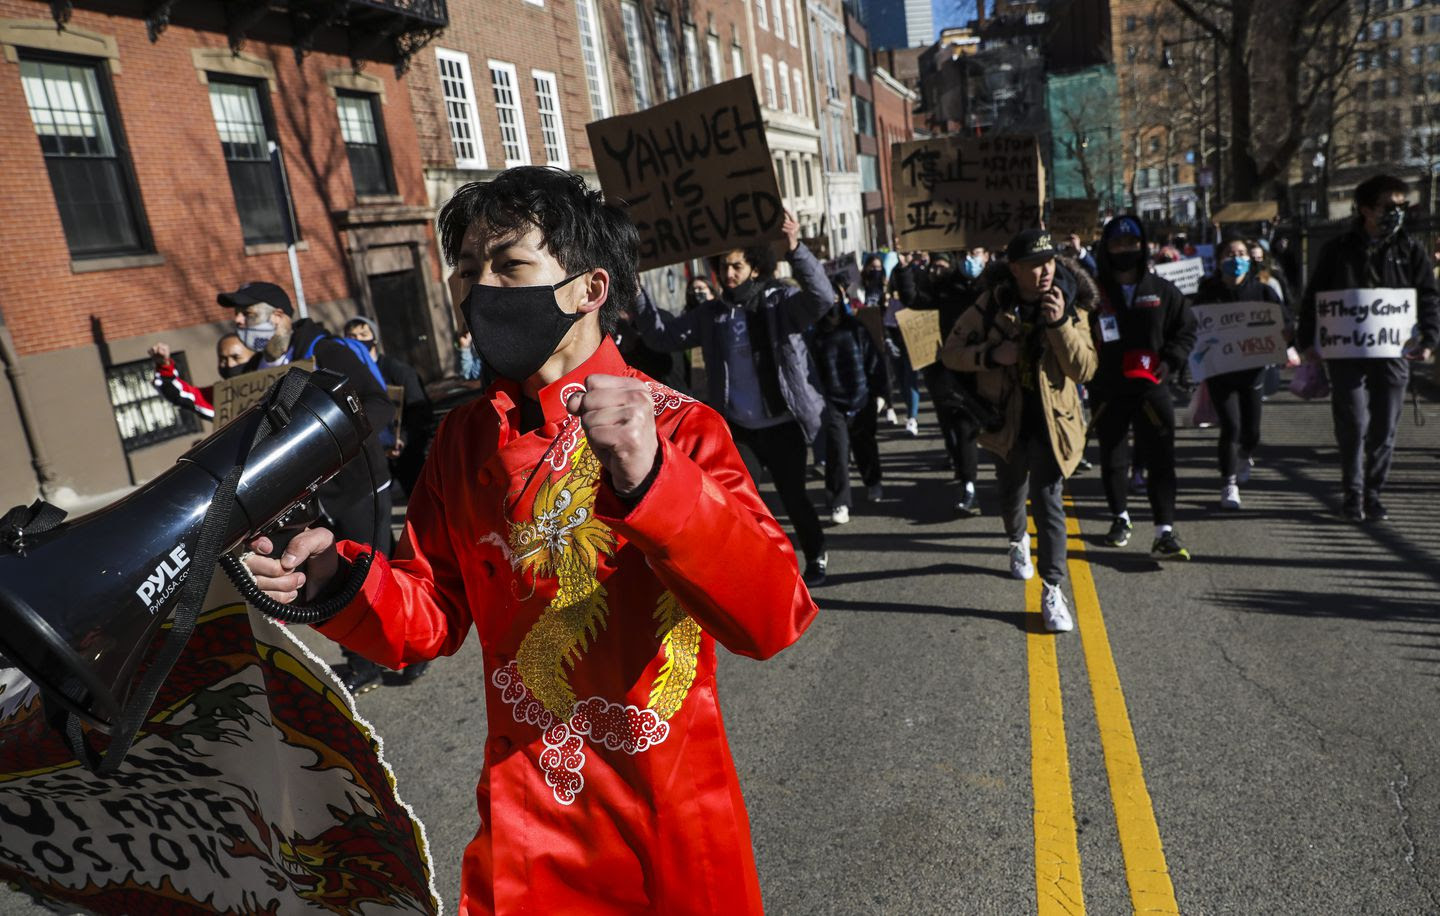 ﻿哈佛大学等学生组织“停止亚裔仇恨”集会 亚裔美国大学生及盟友和社区积极响应